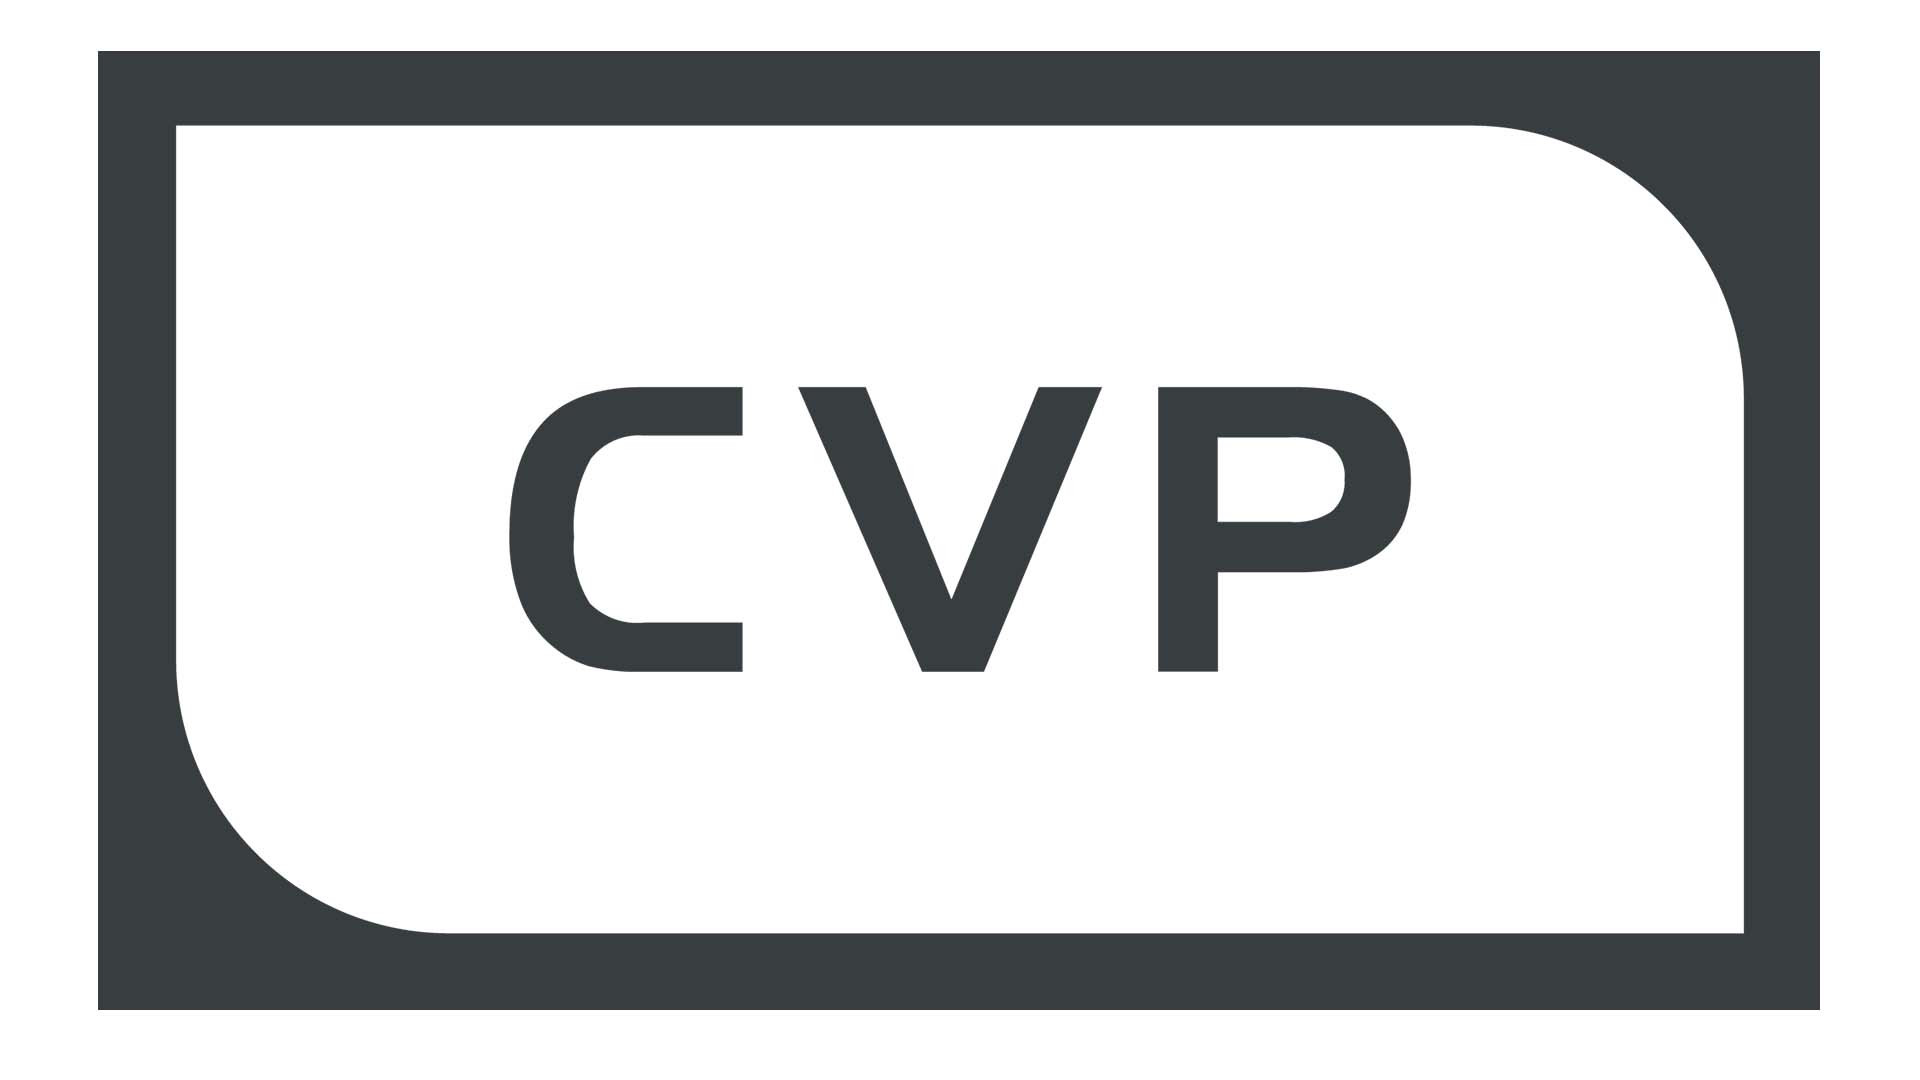 Logo property of CVP.